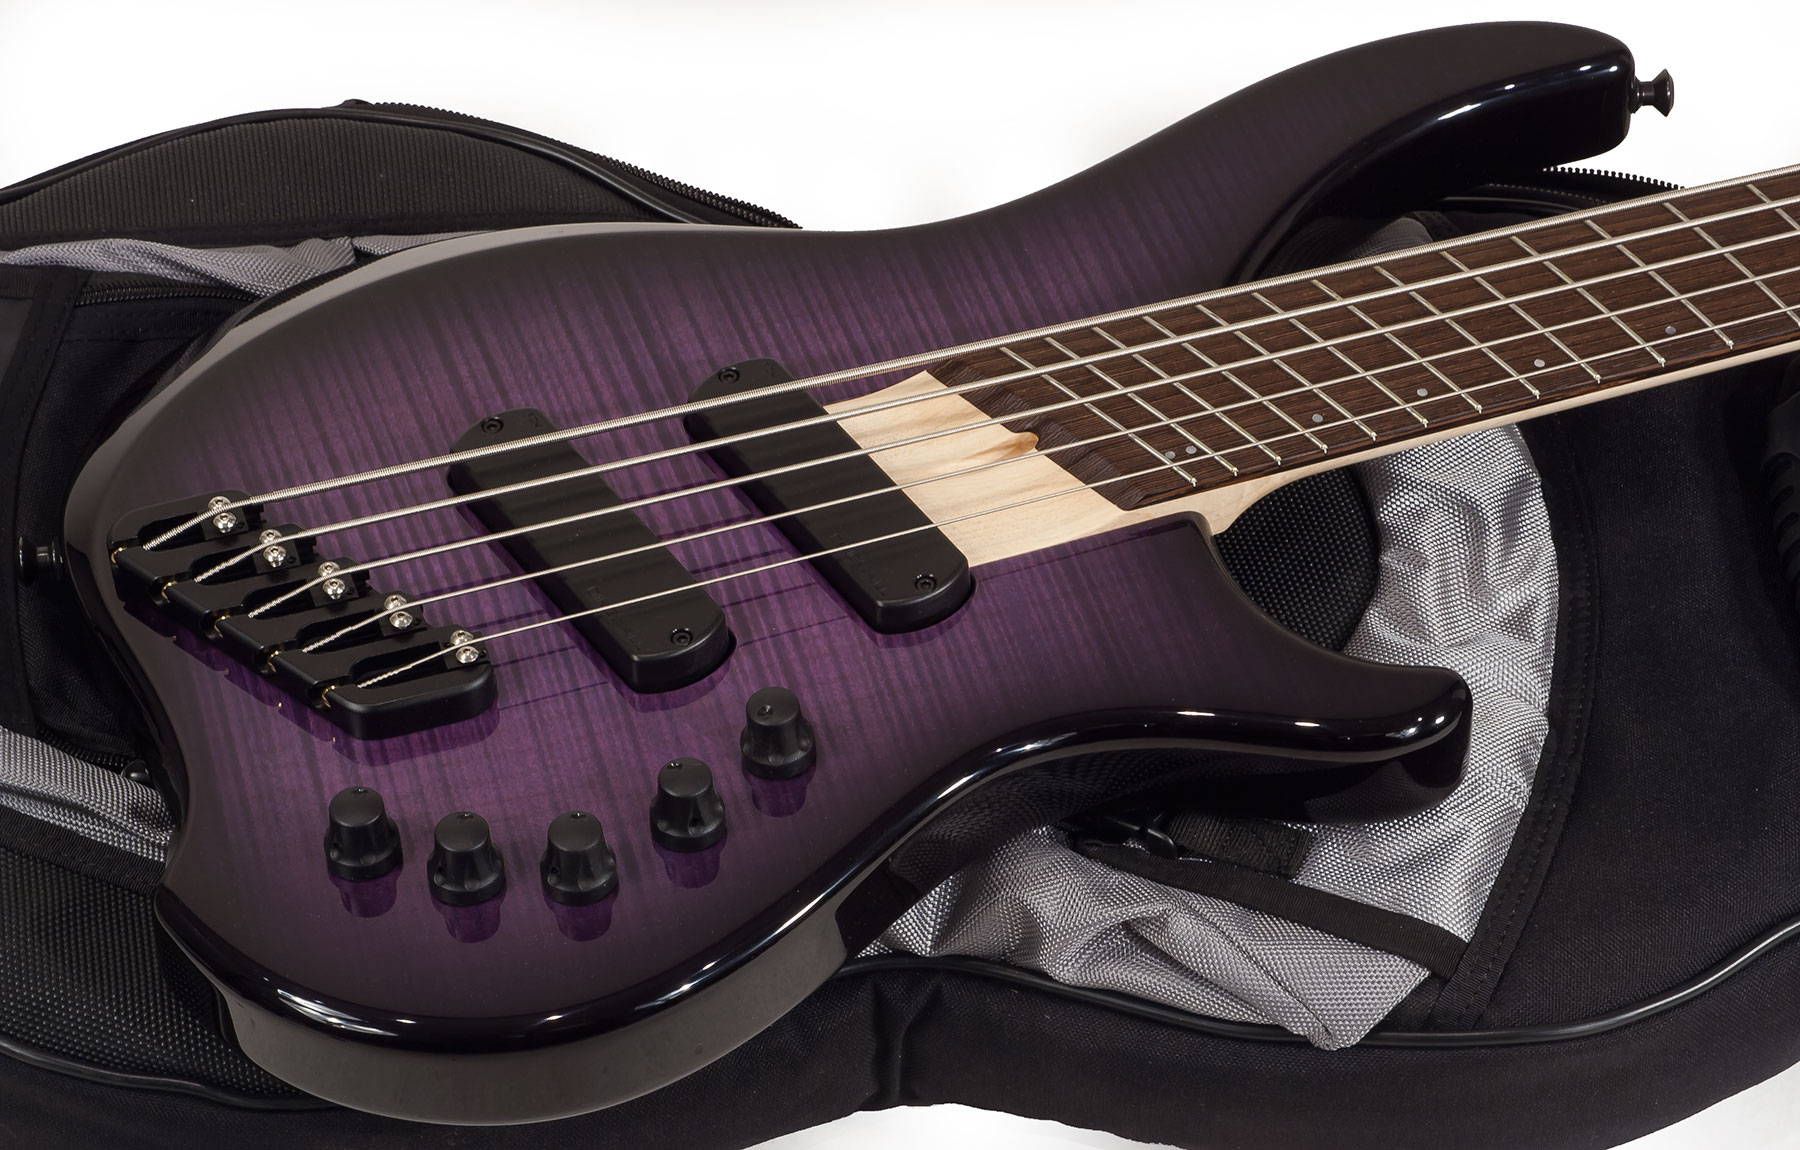 Dingwall Afterburner I 5 2-pickups Wen +housse - Purple Blackburst - Solidbody E-bass - Variation 1